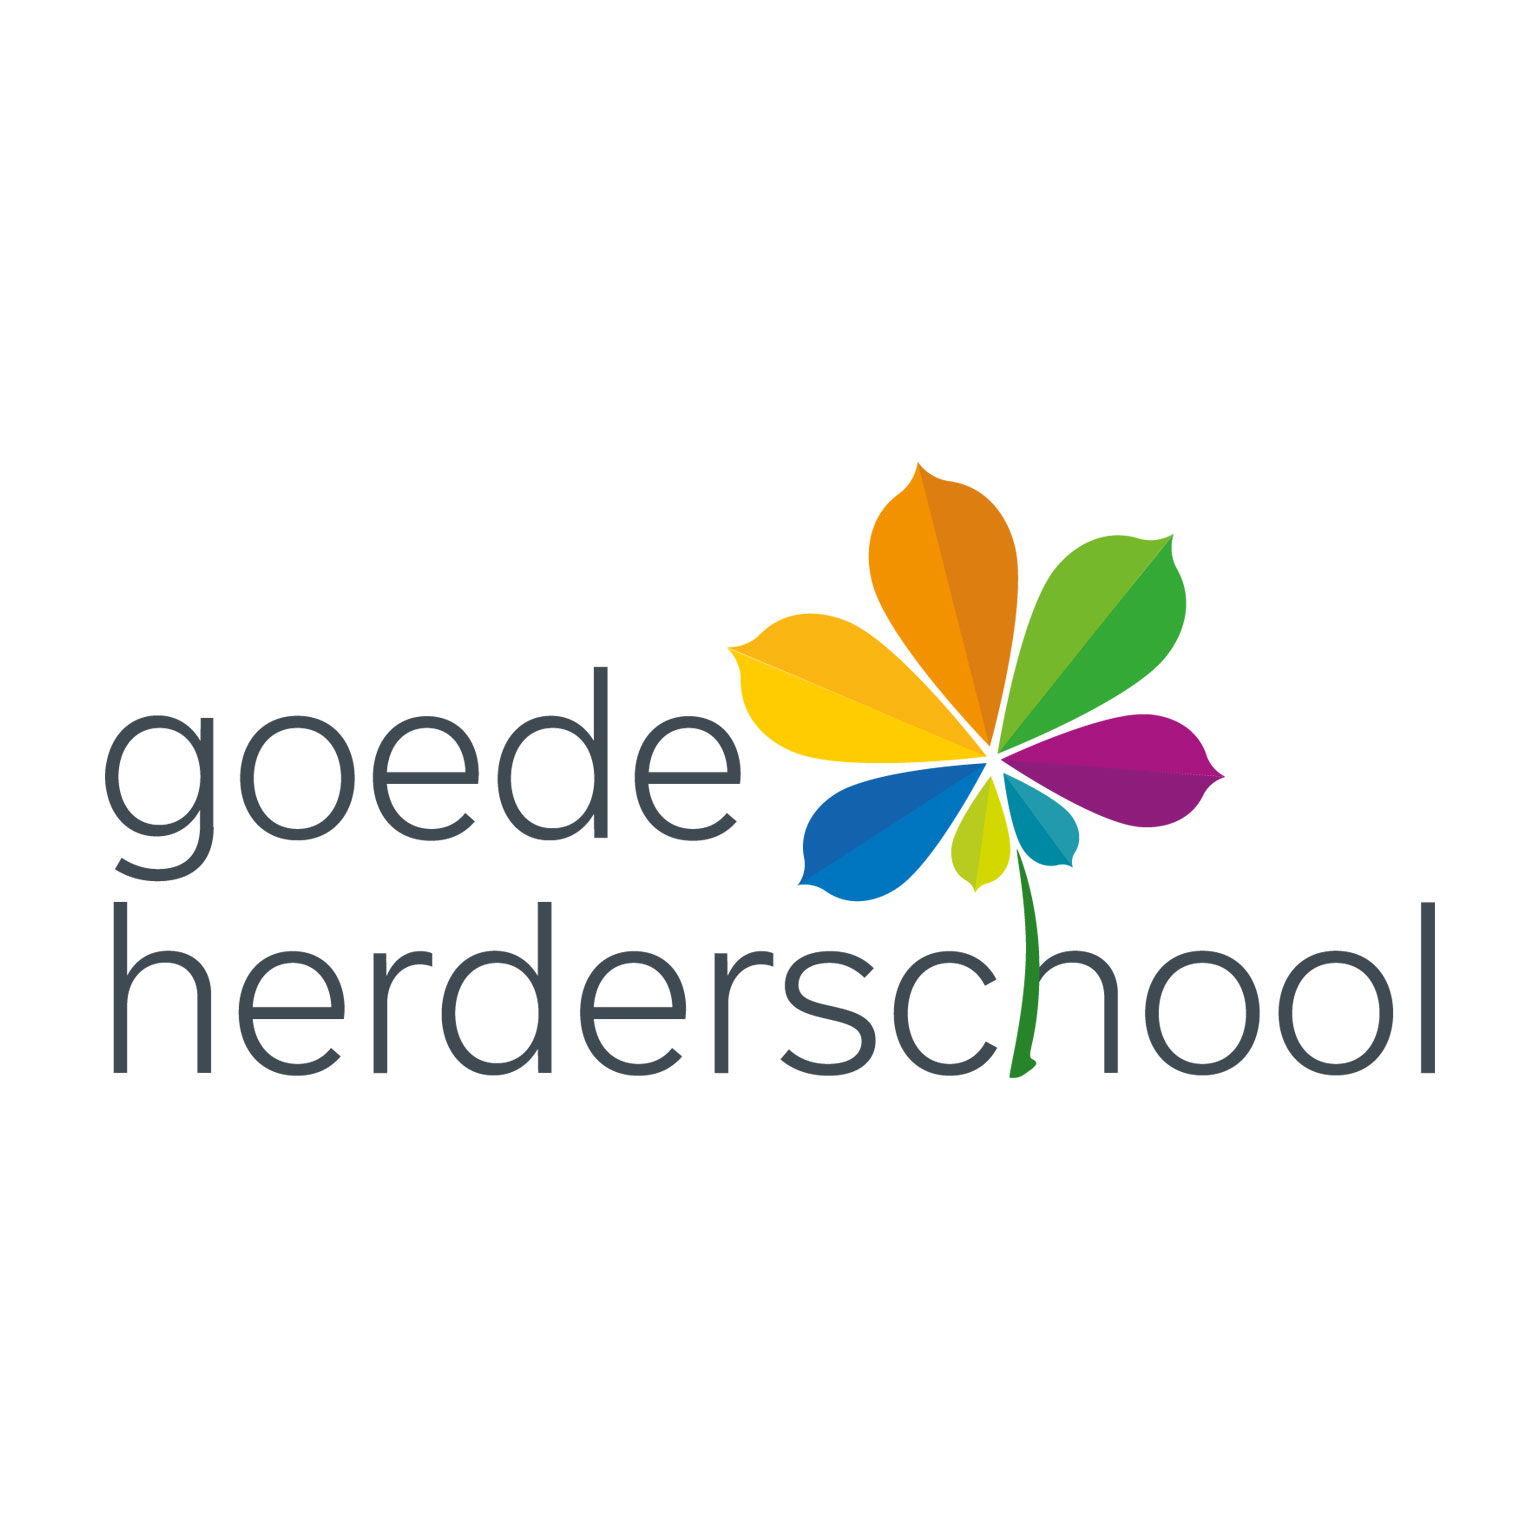 goede-herderschool-logo